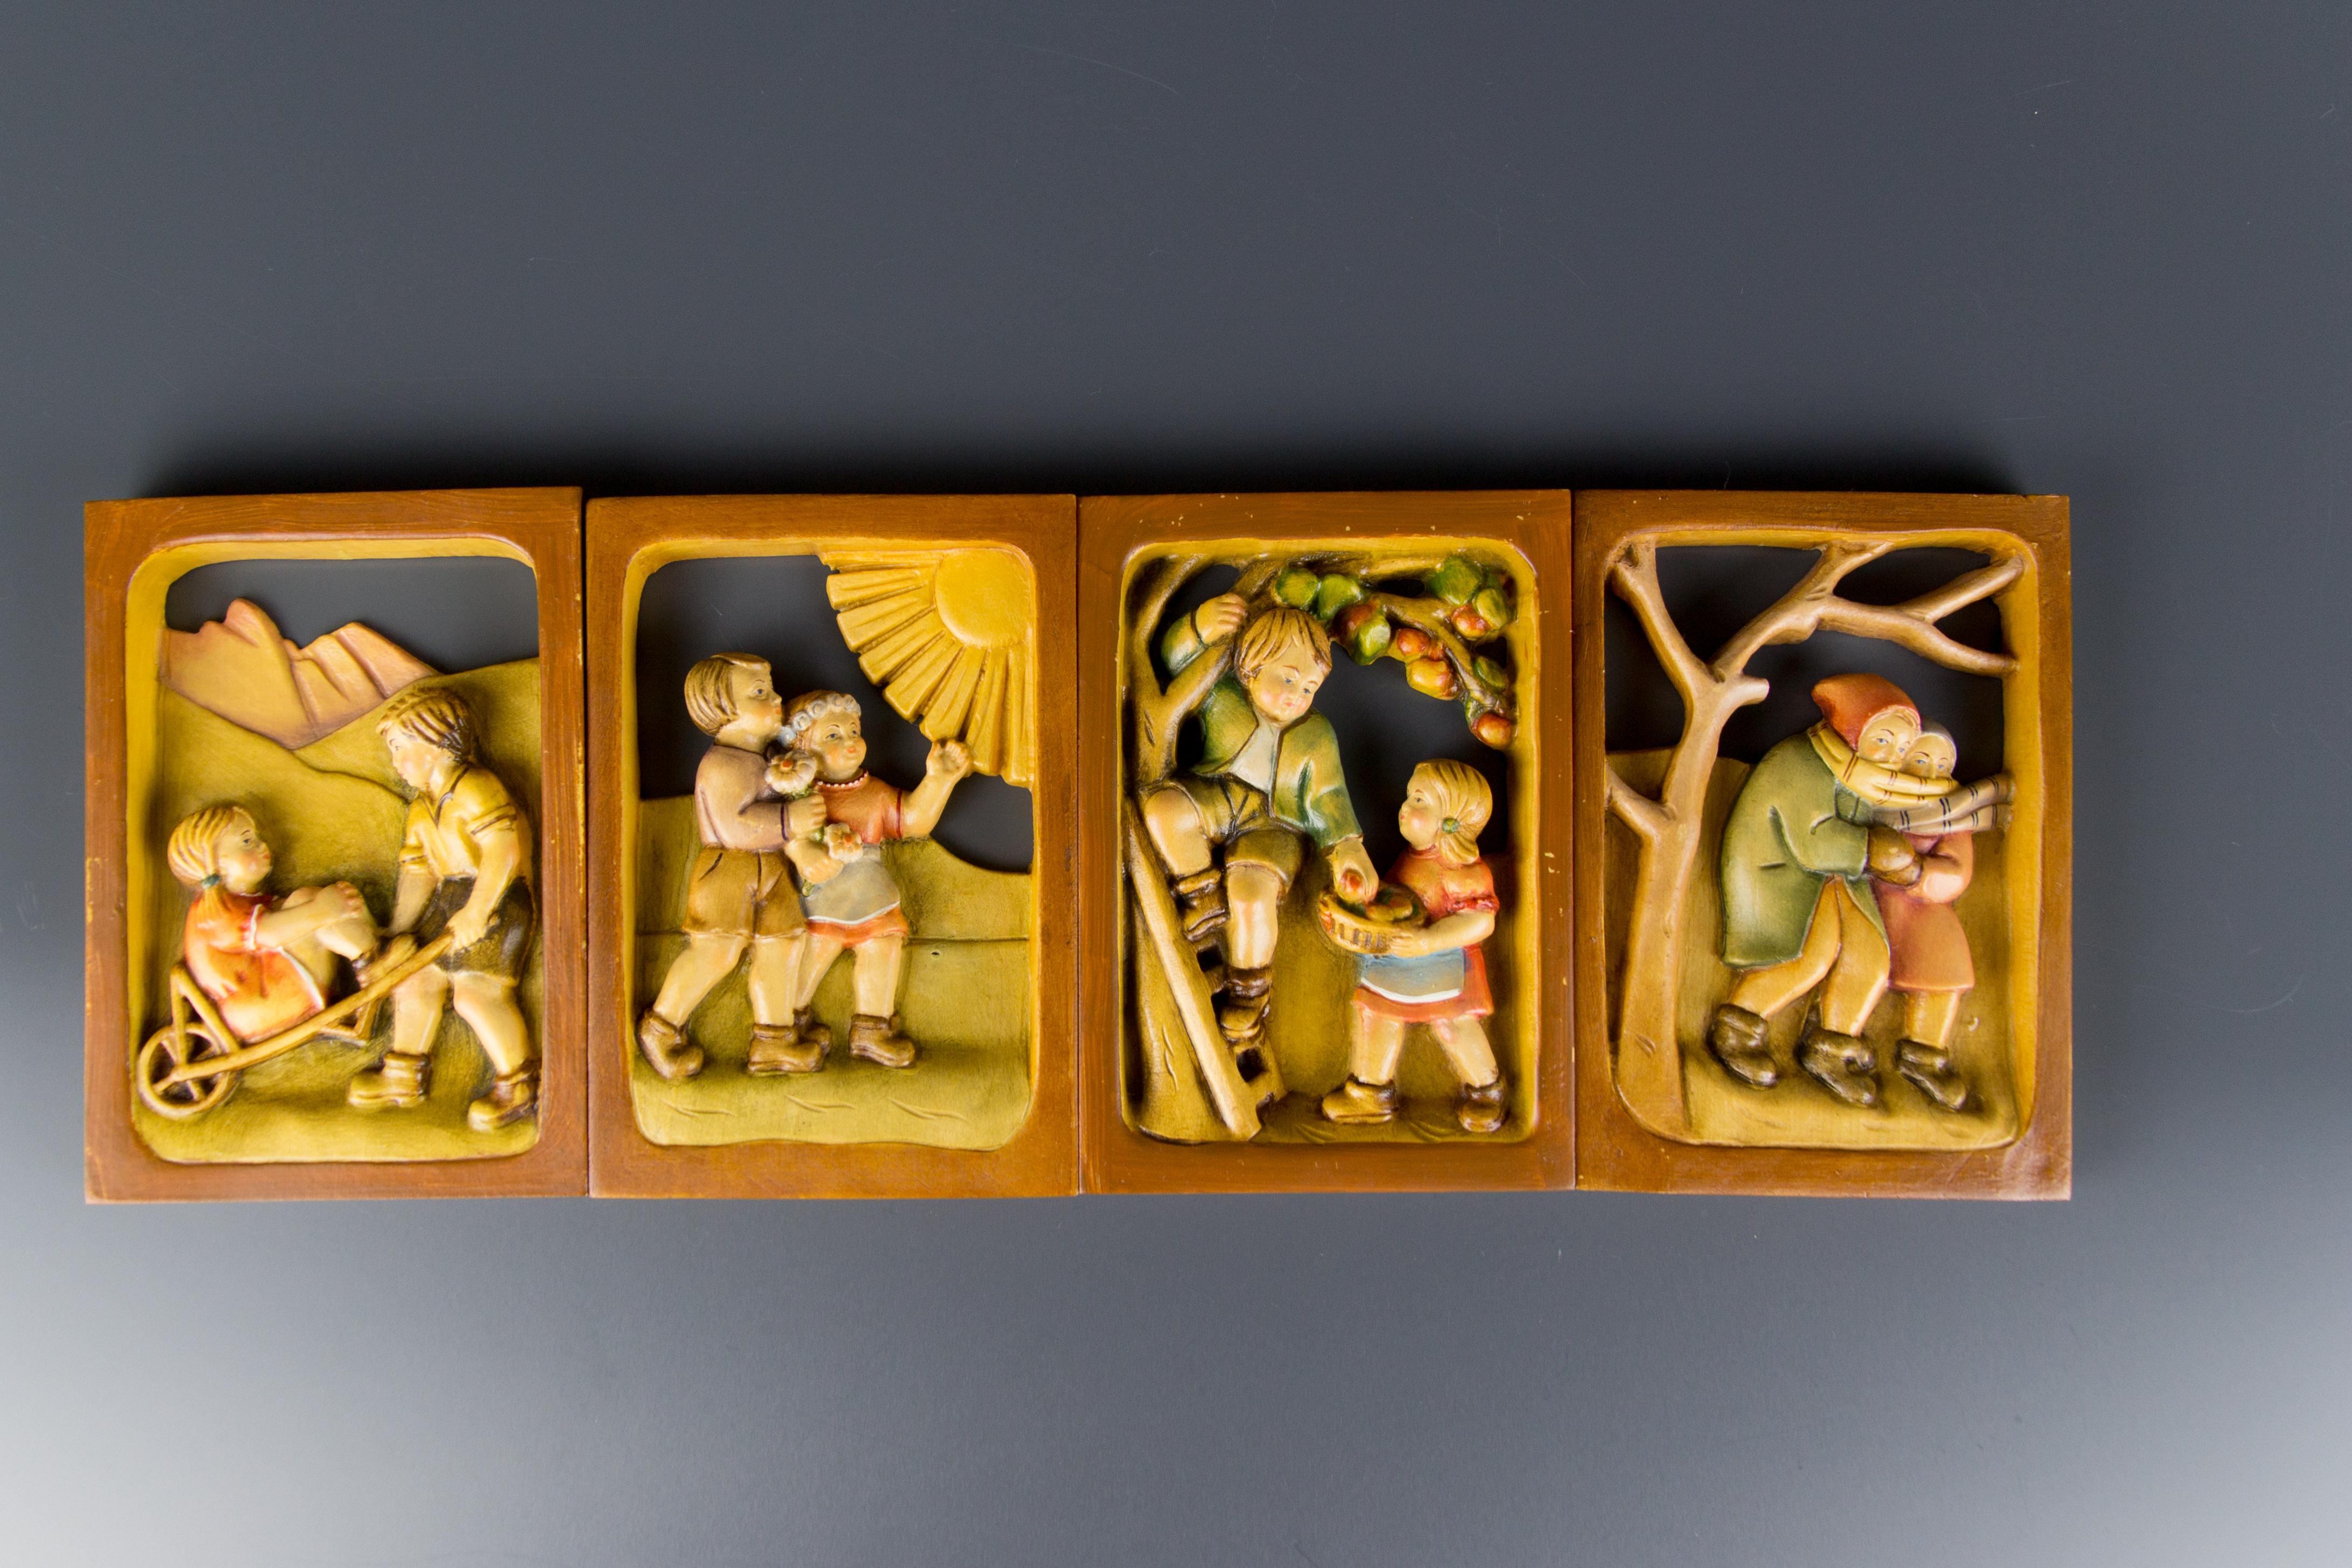 Un adorable ensemble de quatre tableaux en bois représentant des scènes d'enfants mignons aux Quatre Saisons. Sculpté et peint à la main de façon magistrale. Sud-Tyrol, années 1980.
Dimensions (une photo) : hauteur 16 cm / 6.29 in ; largeur 11 cm /